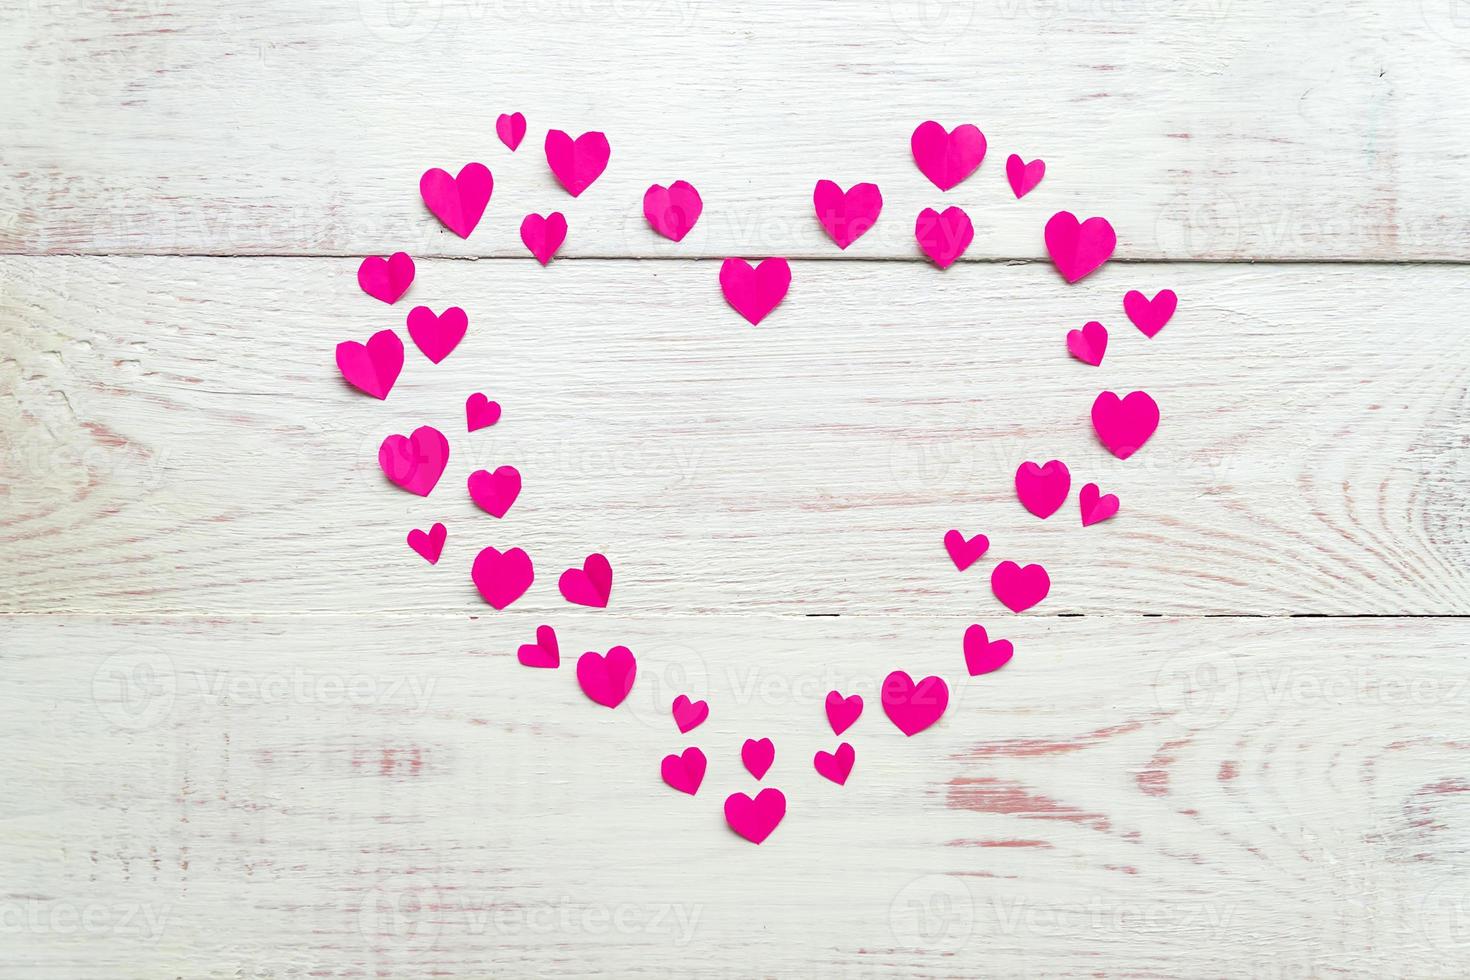 gran corazón rosa hecho de papel recortado pequeños corazones sobre fondo de madera. decoración hecha a mano para el día de san valentín. foto